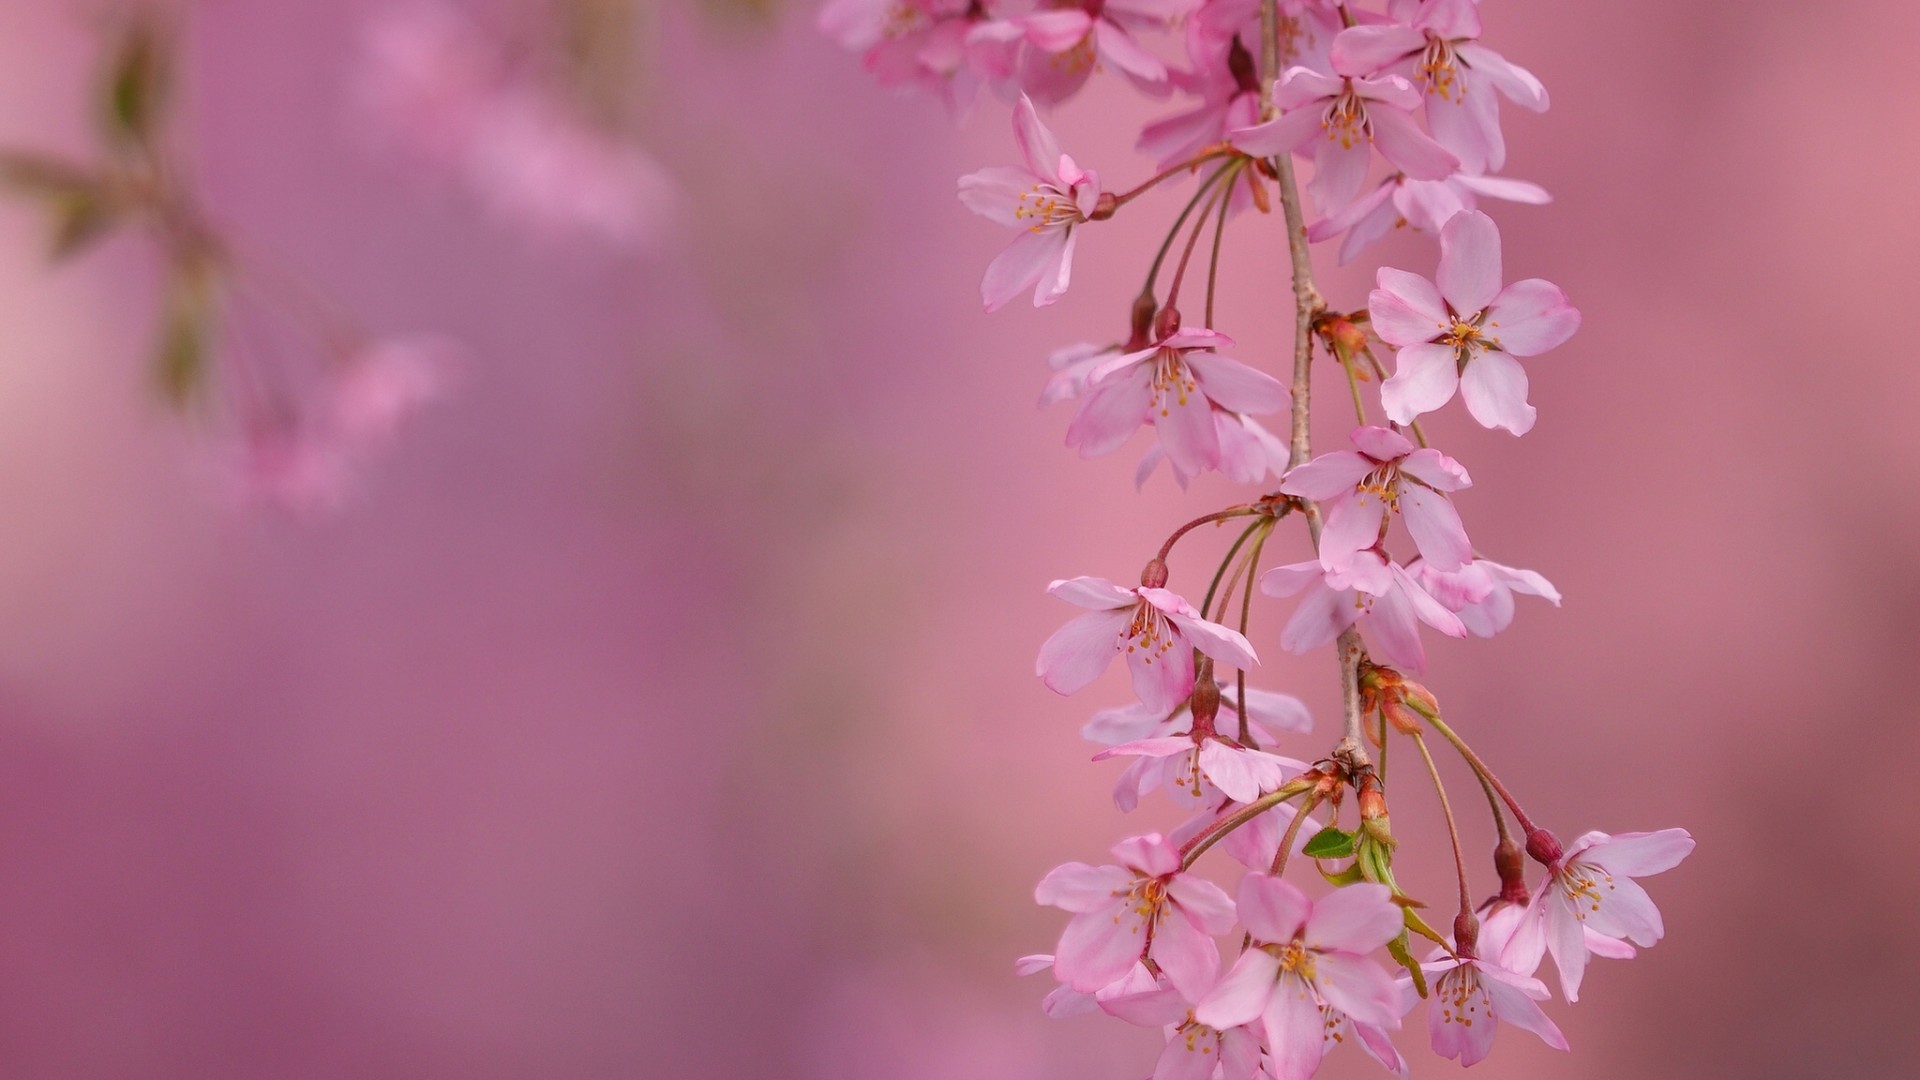 「静待春暖花开」十五张最美花朵摄影壁纸图片欣赏